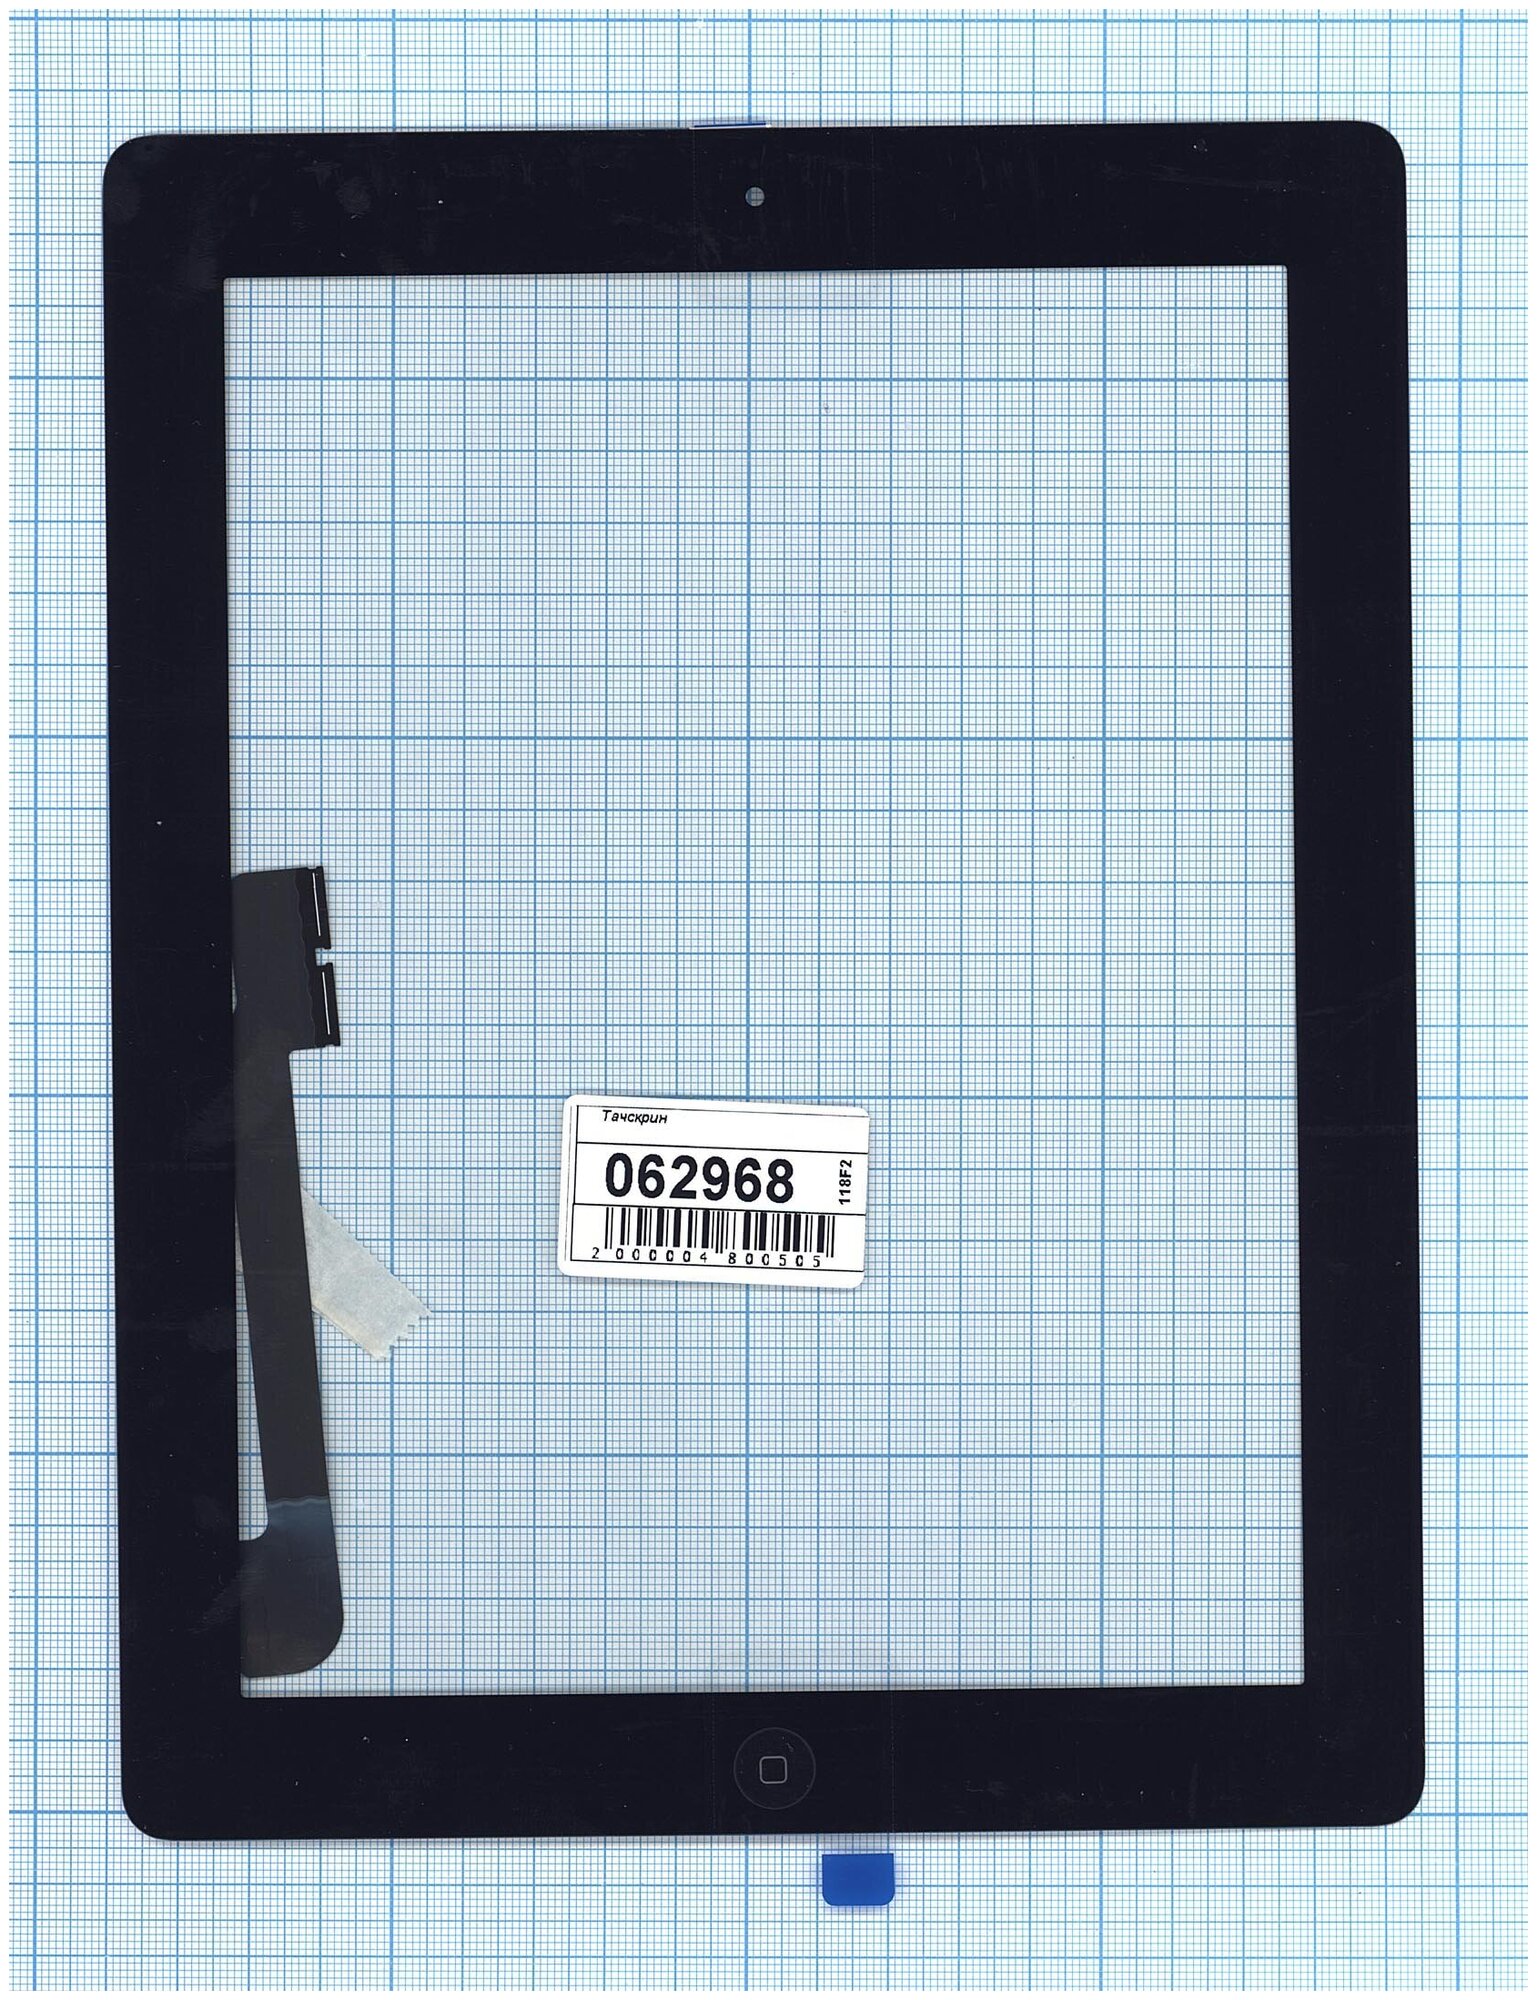 Сенсорное стекло (тачскрин) для iPad 3 черное с кнопкой